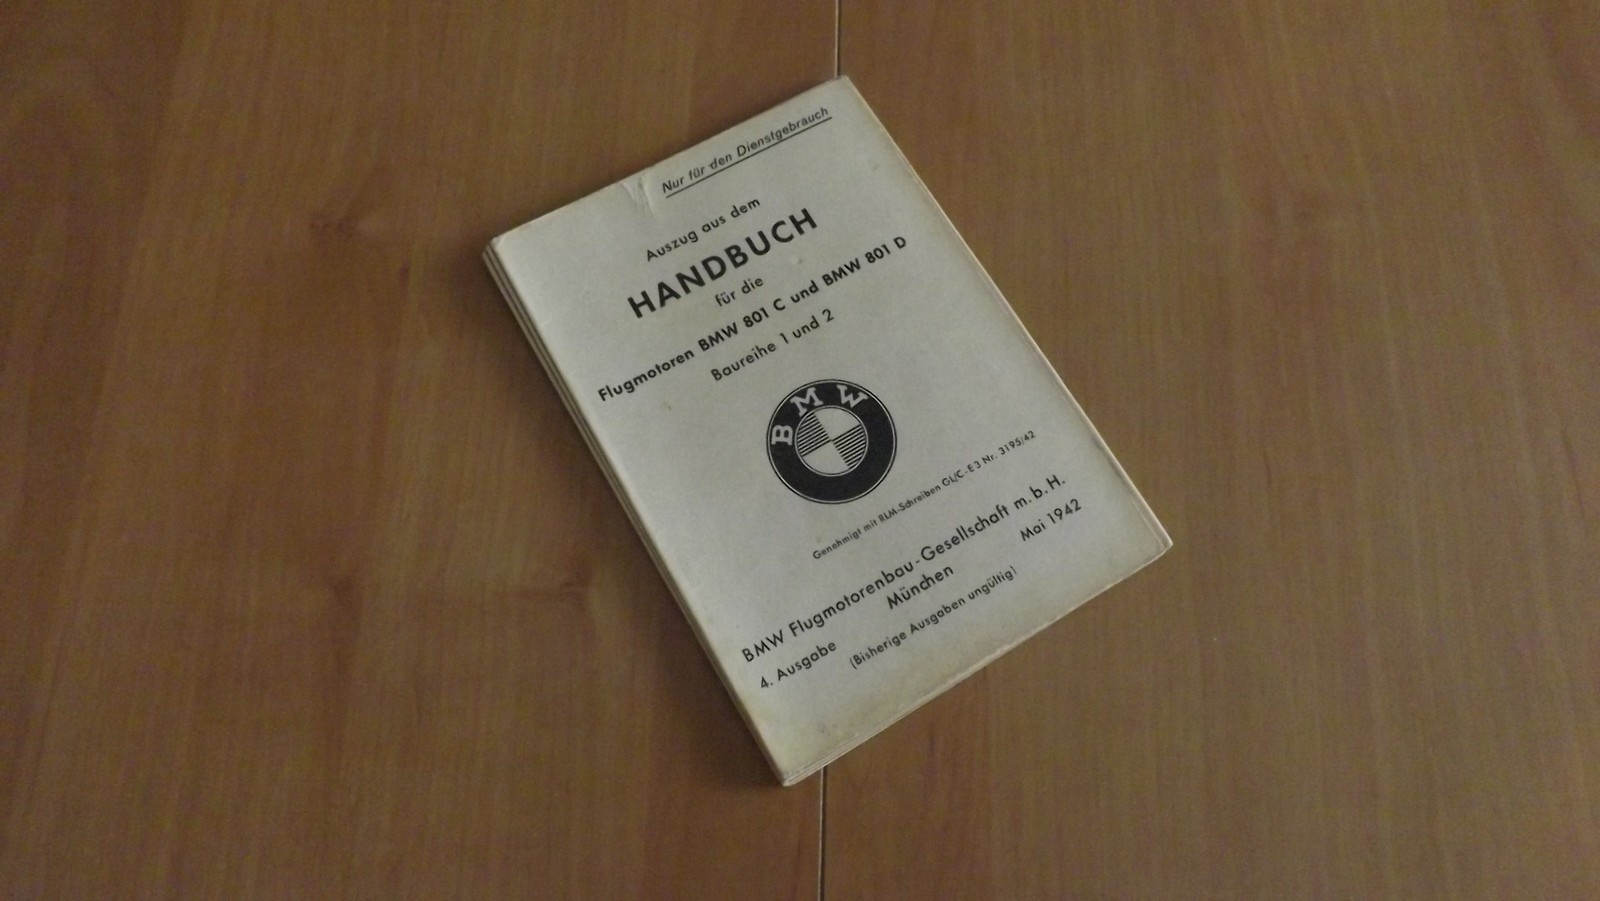 Handbuch für die Flugmotorenanlagen BMW 801 C und BMW 801 D (Heimatmuseum Alten CC BY-NC-SA)